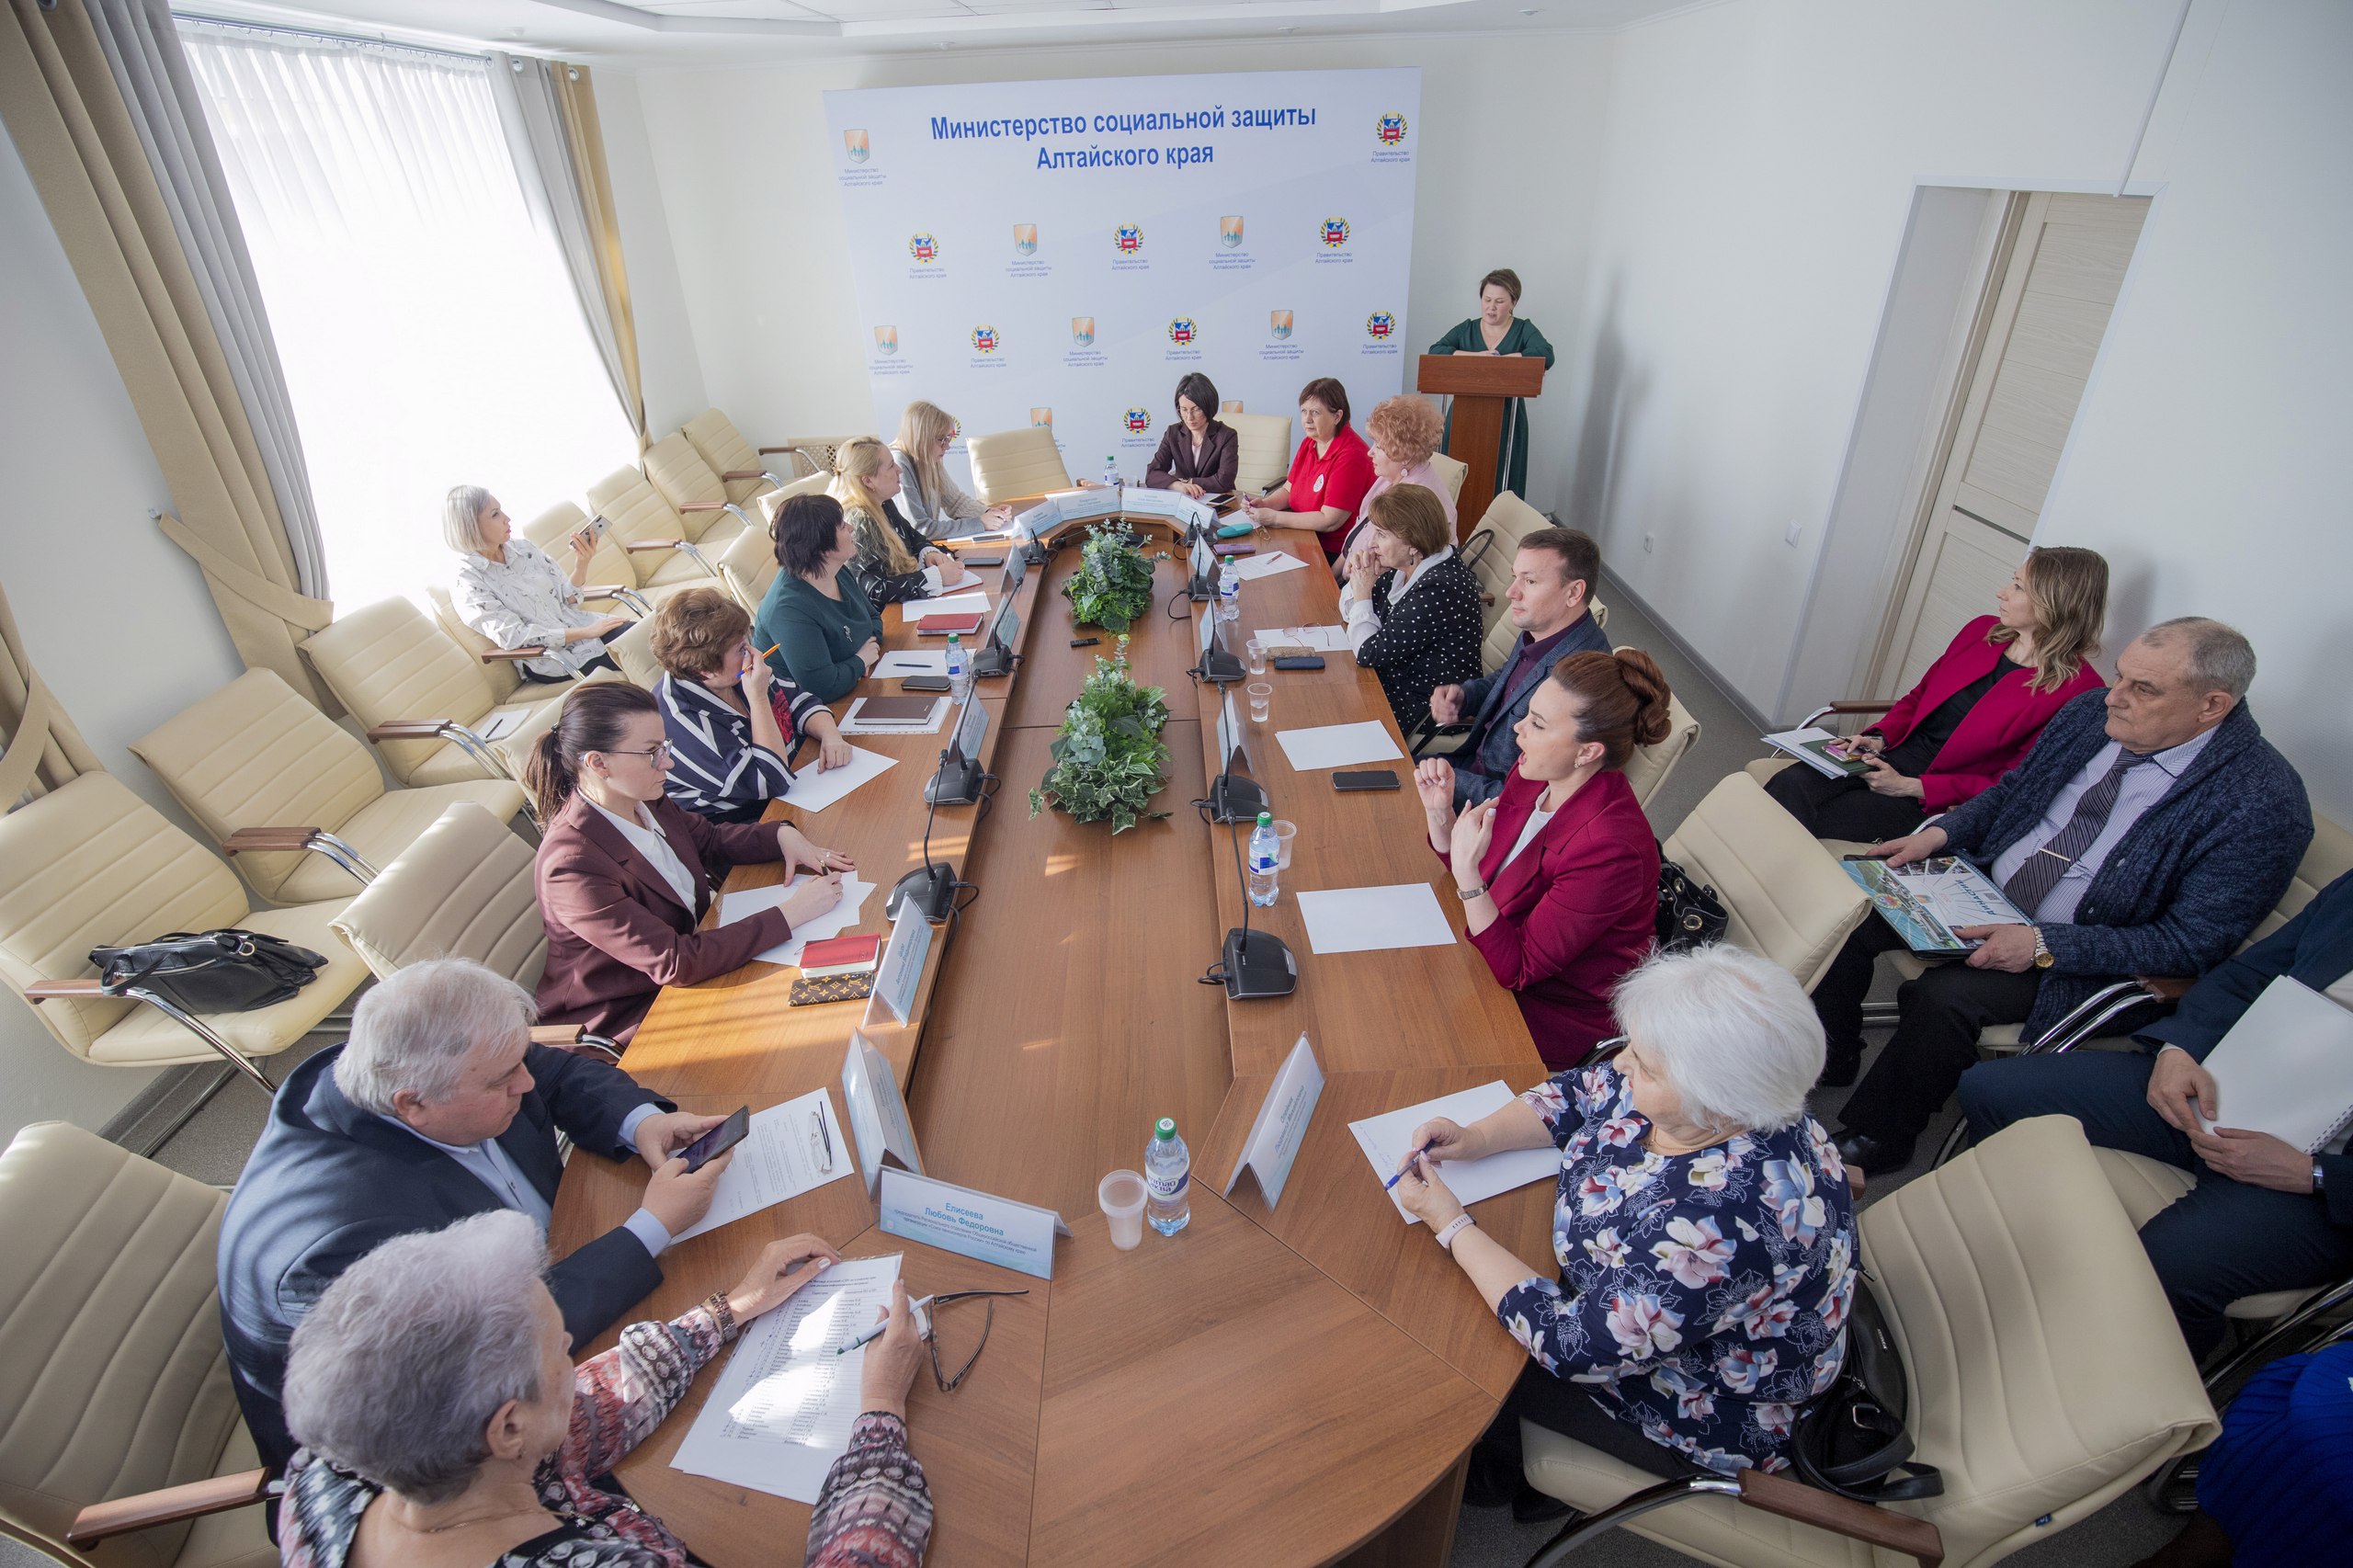 17 марта, состоялось плановое заседание Общественного совета при Минсоцзащите Алтайского края